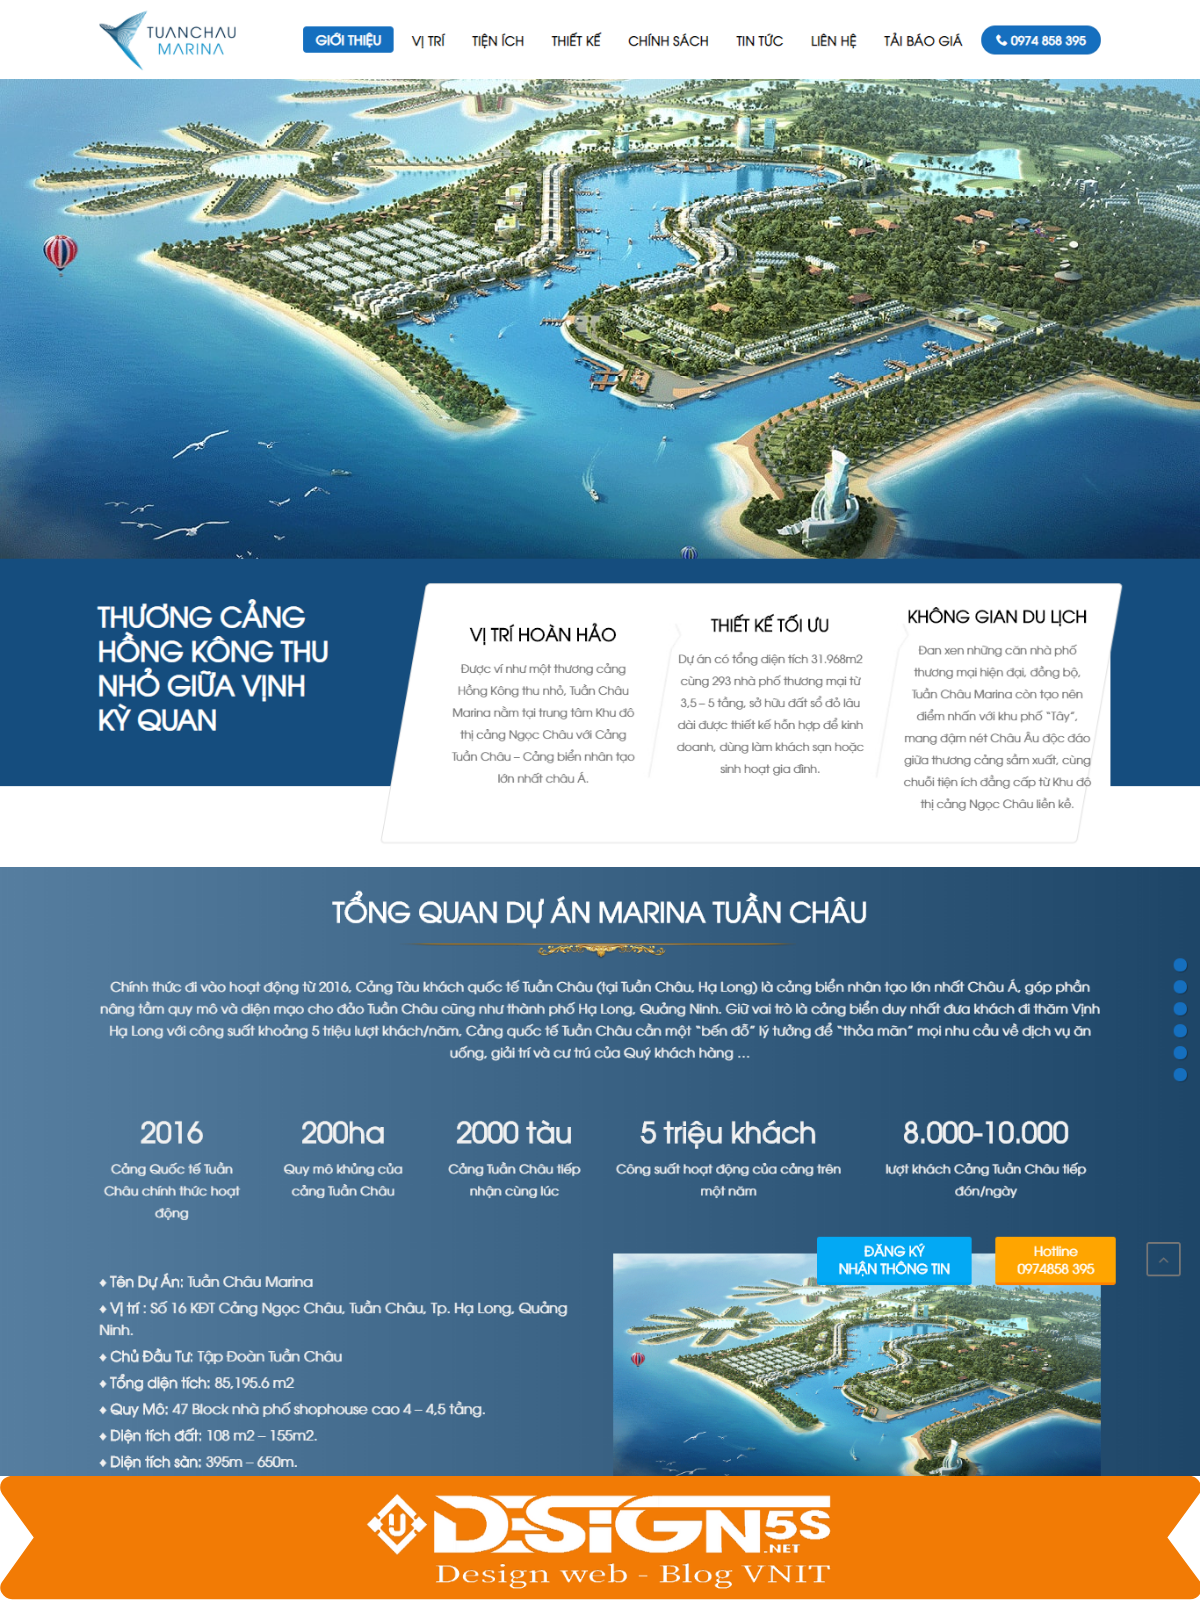 Template Landing Page BĐS là mẫu được thiết kế giới thiệu dự án căn hộ Tuần Châu Marina